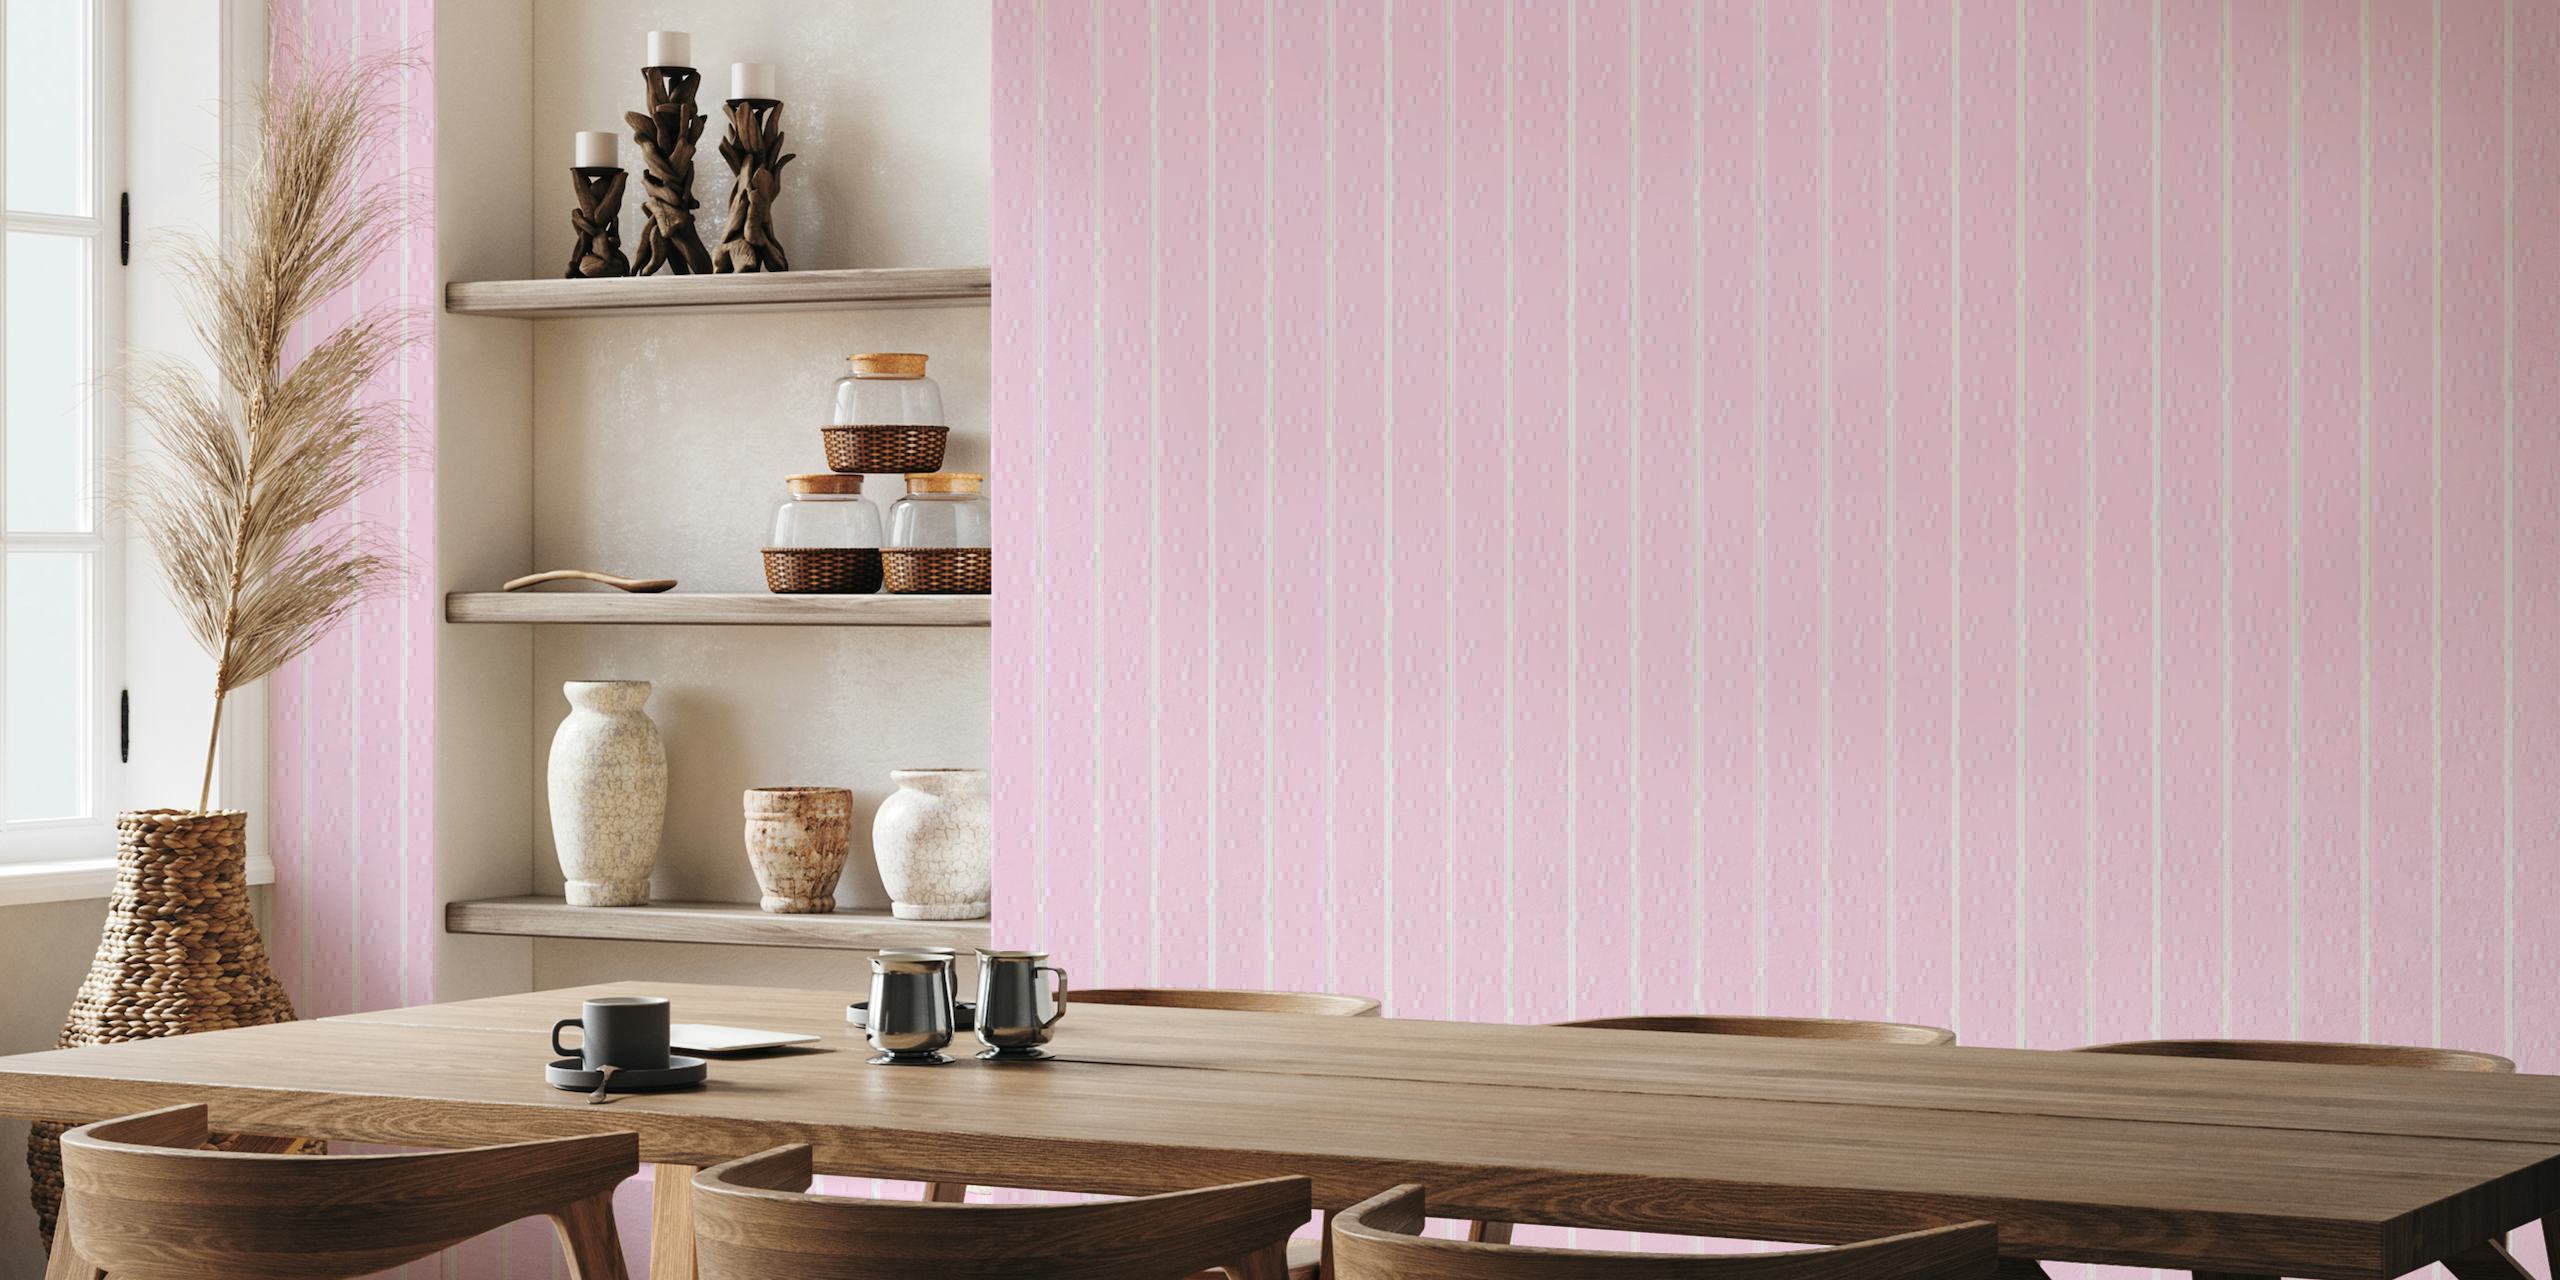 Fotomural rosa suave con telas a rayas verticales para decoración del hogar